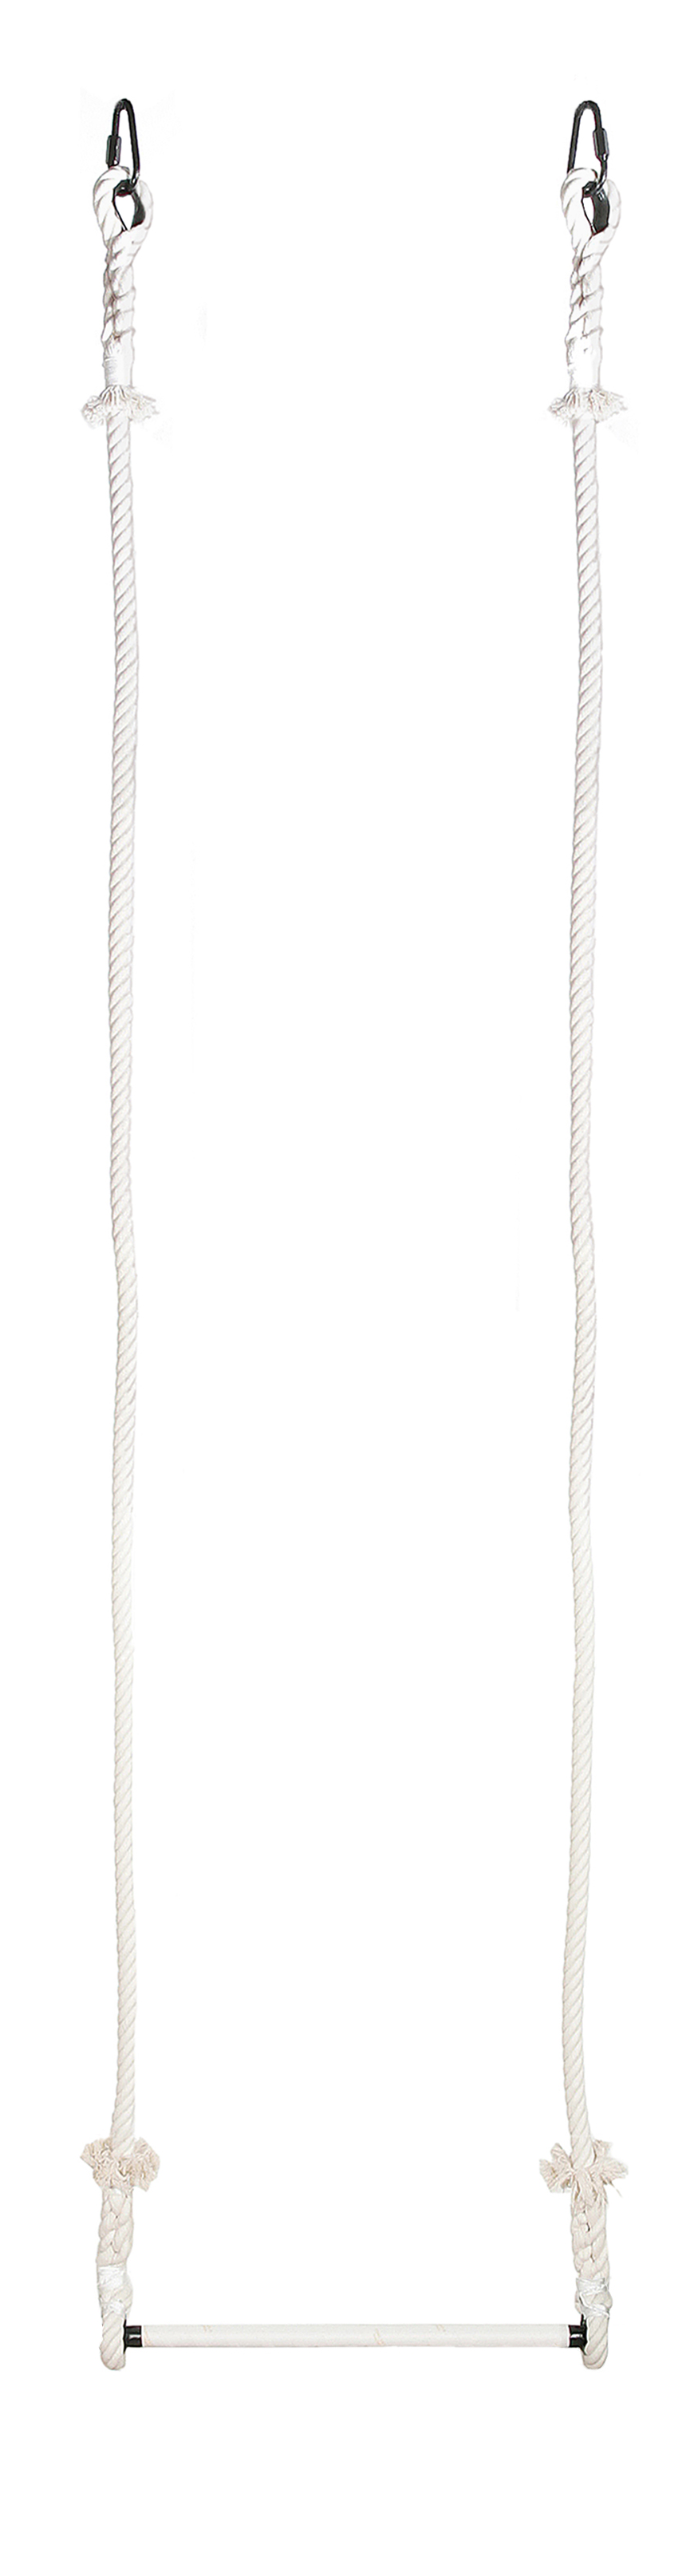 Trapez, 50cm breit, 2,50 Meter Seillänge